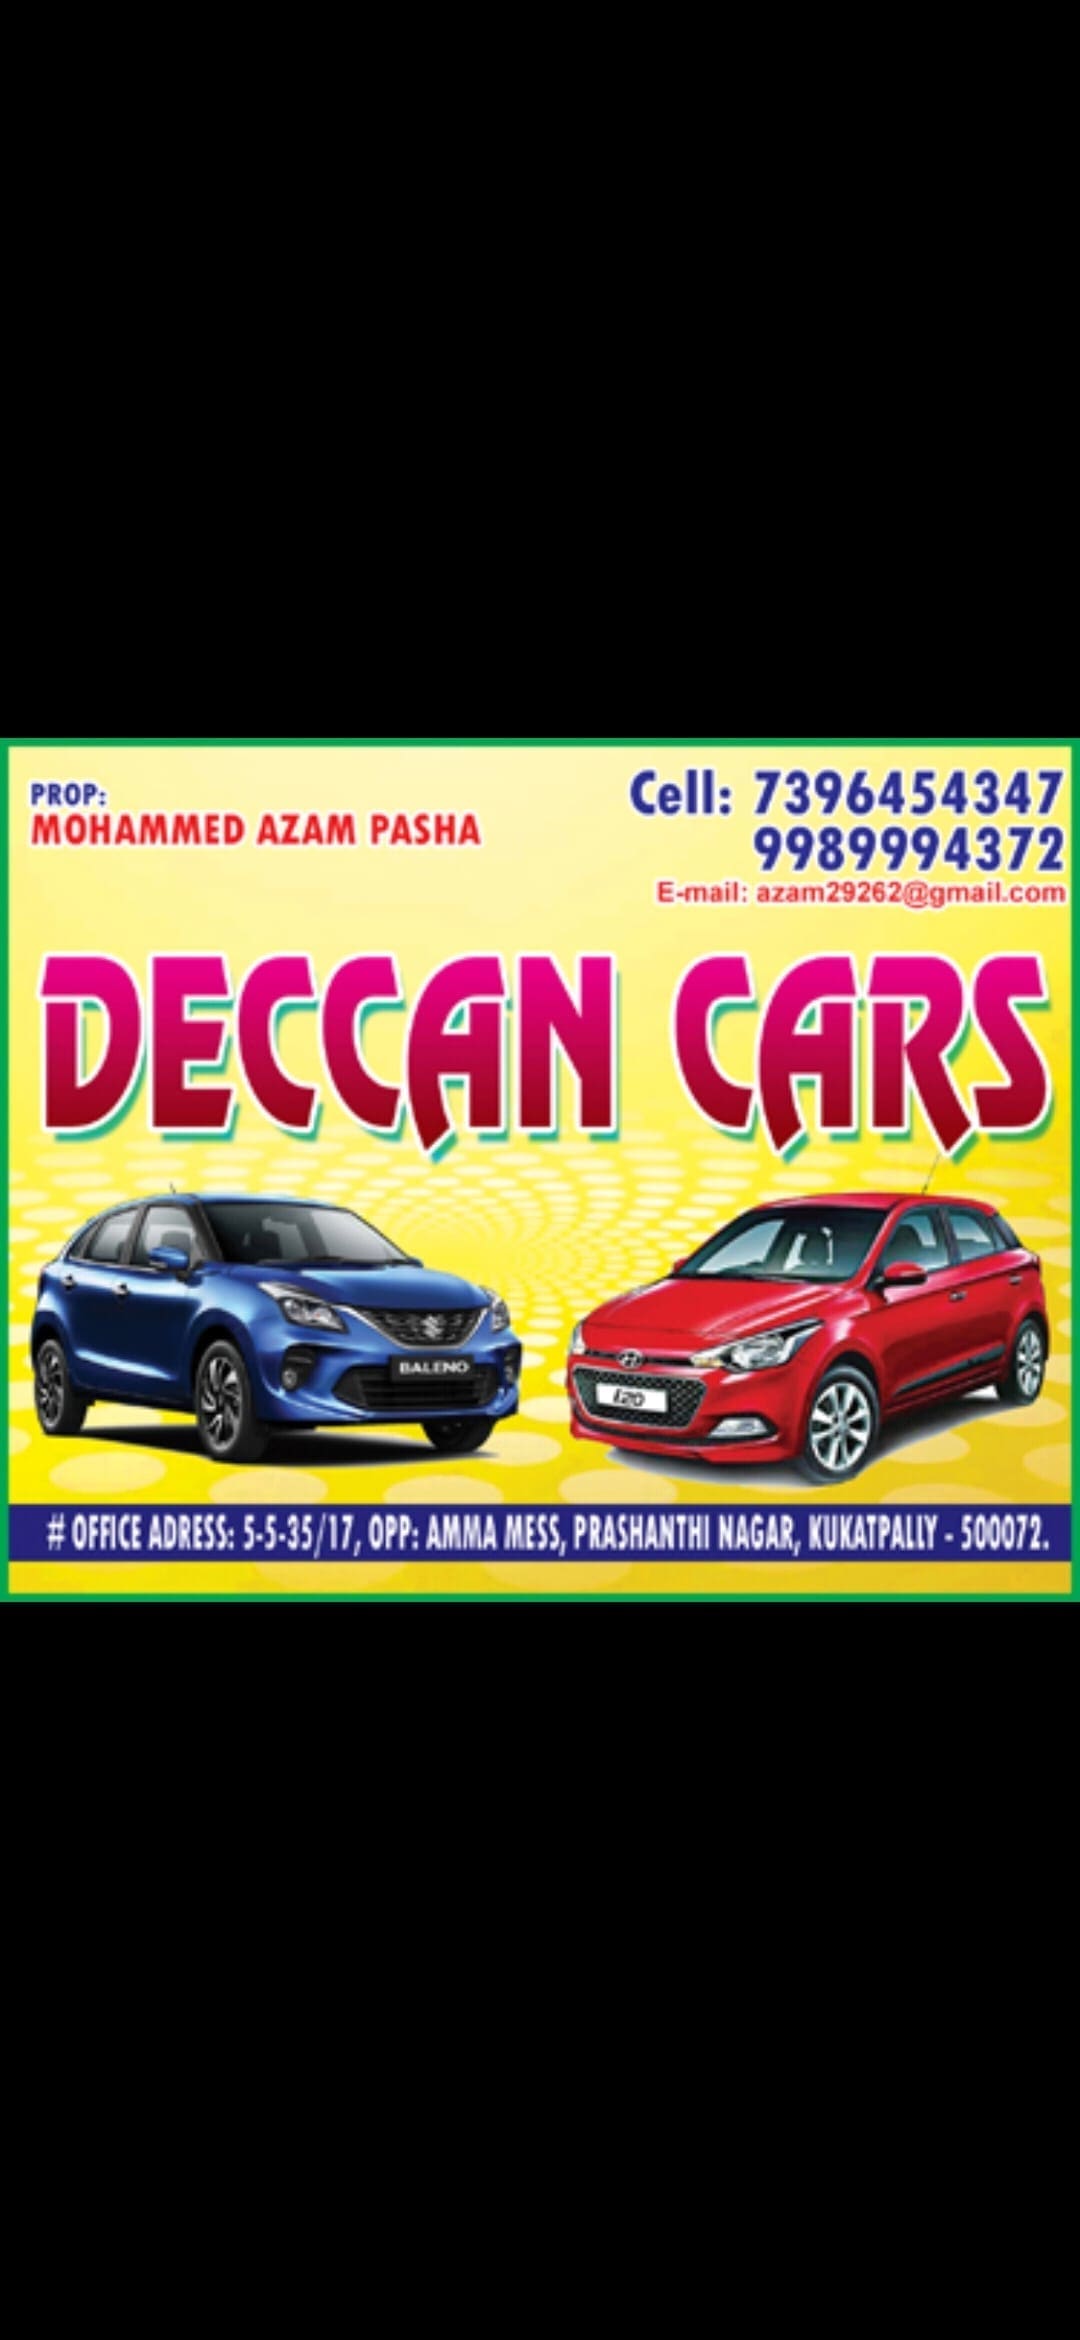 Deccan cars